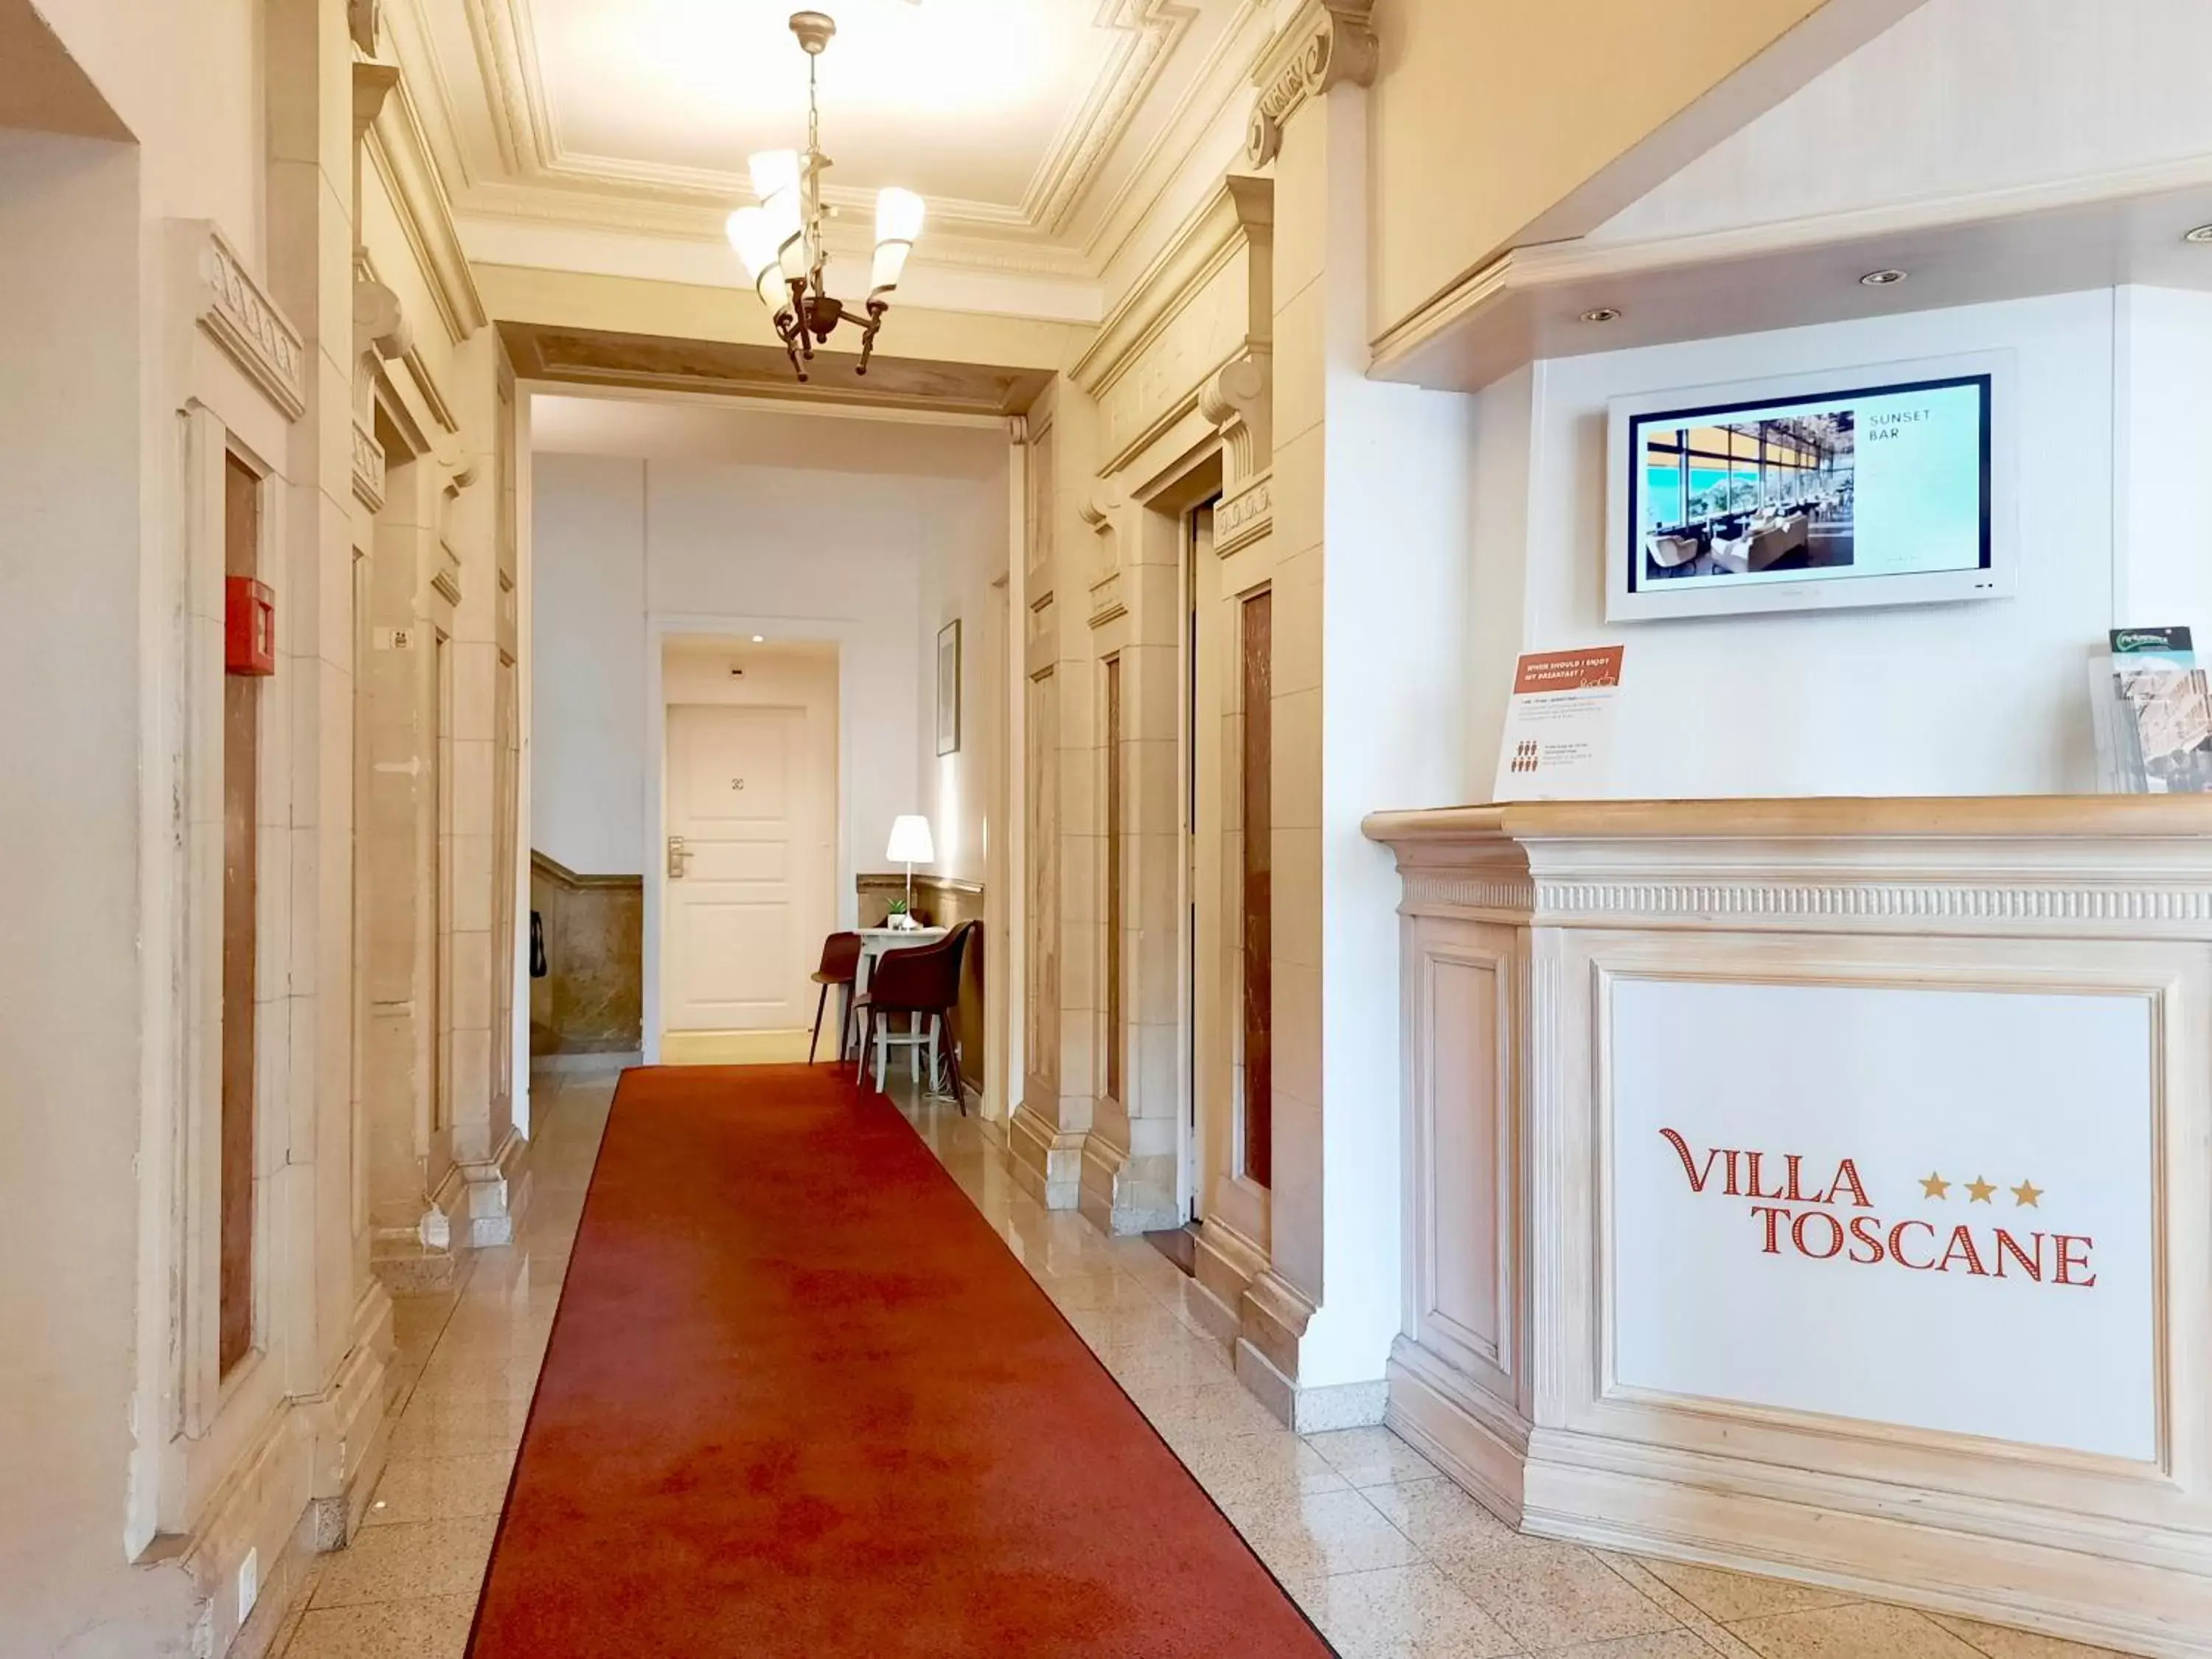 Property building, Lobby/Reception in Villa Toscane